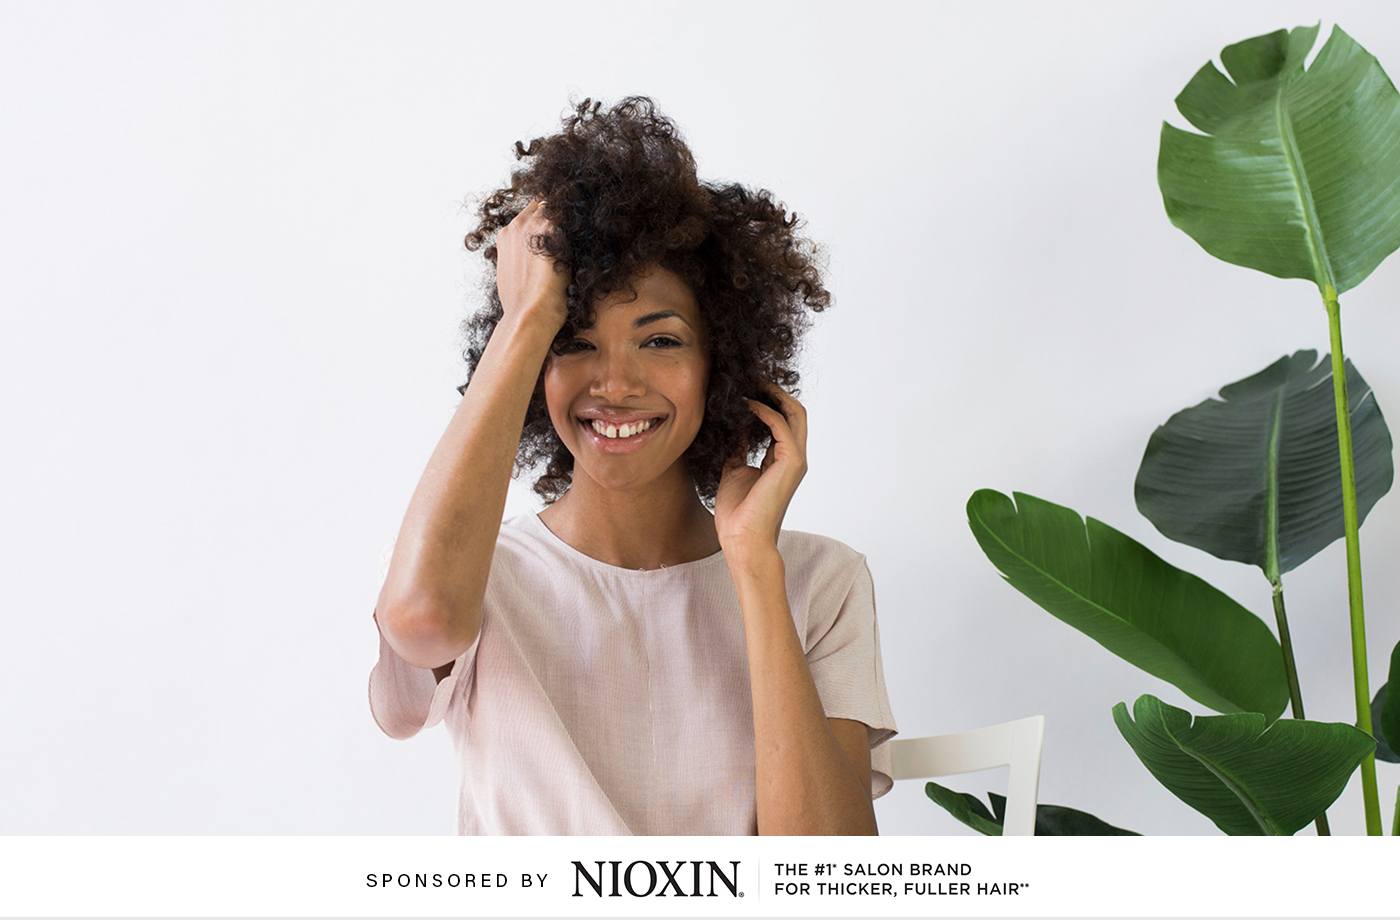 NIOXIN hair supplements